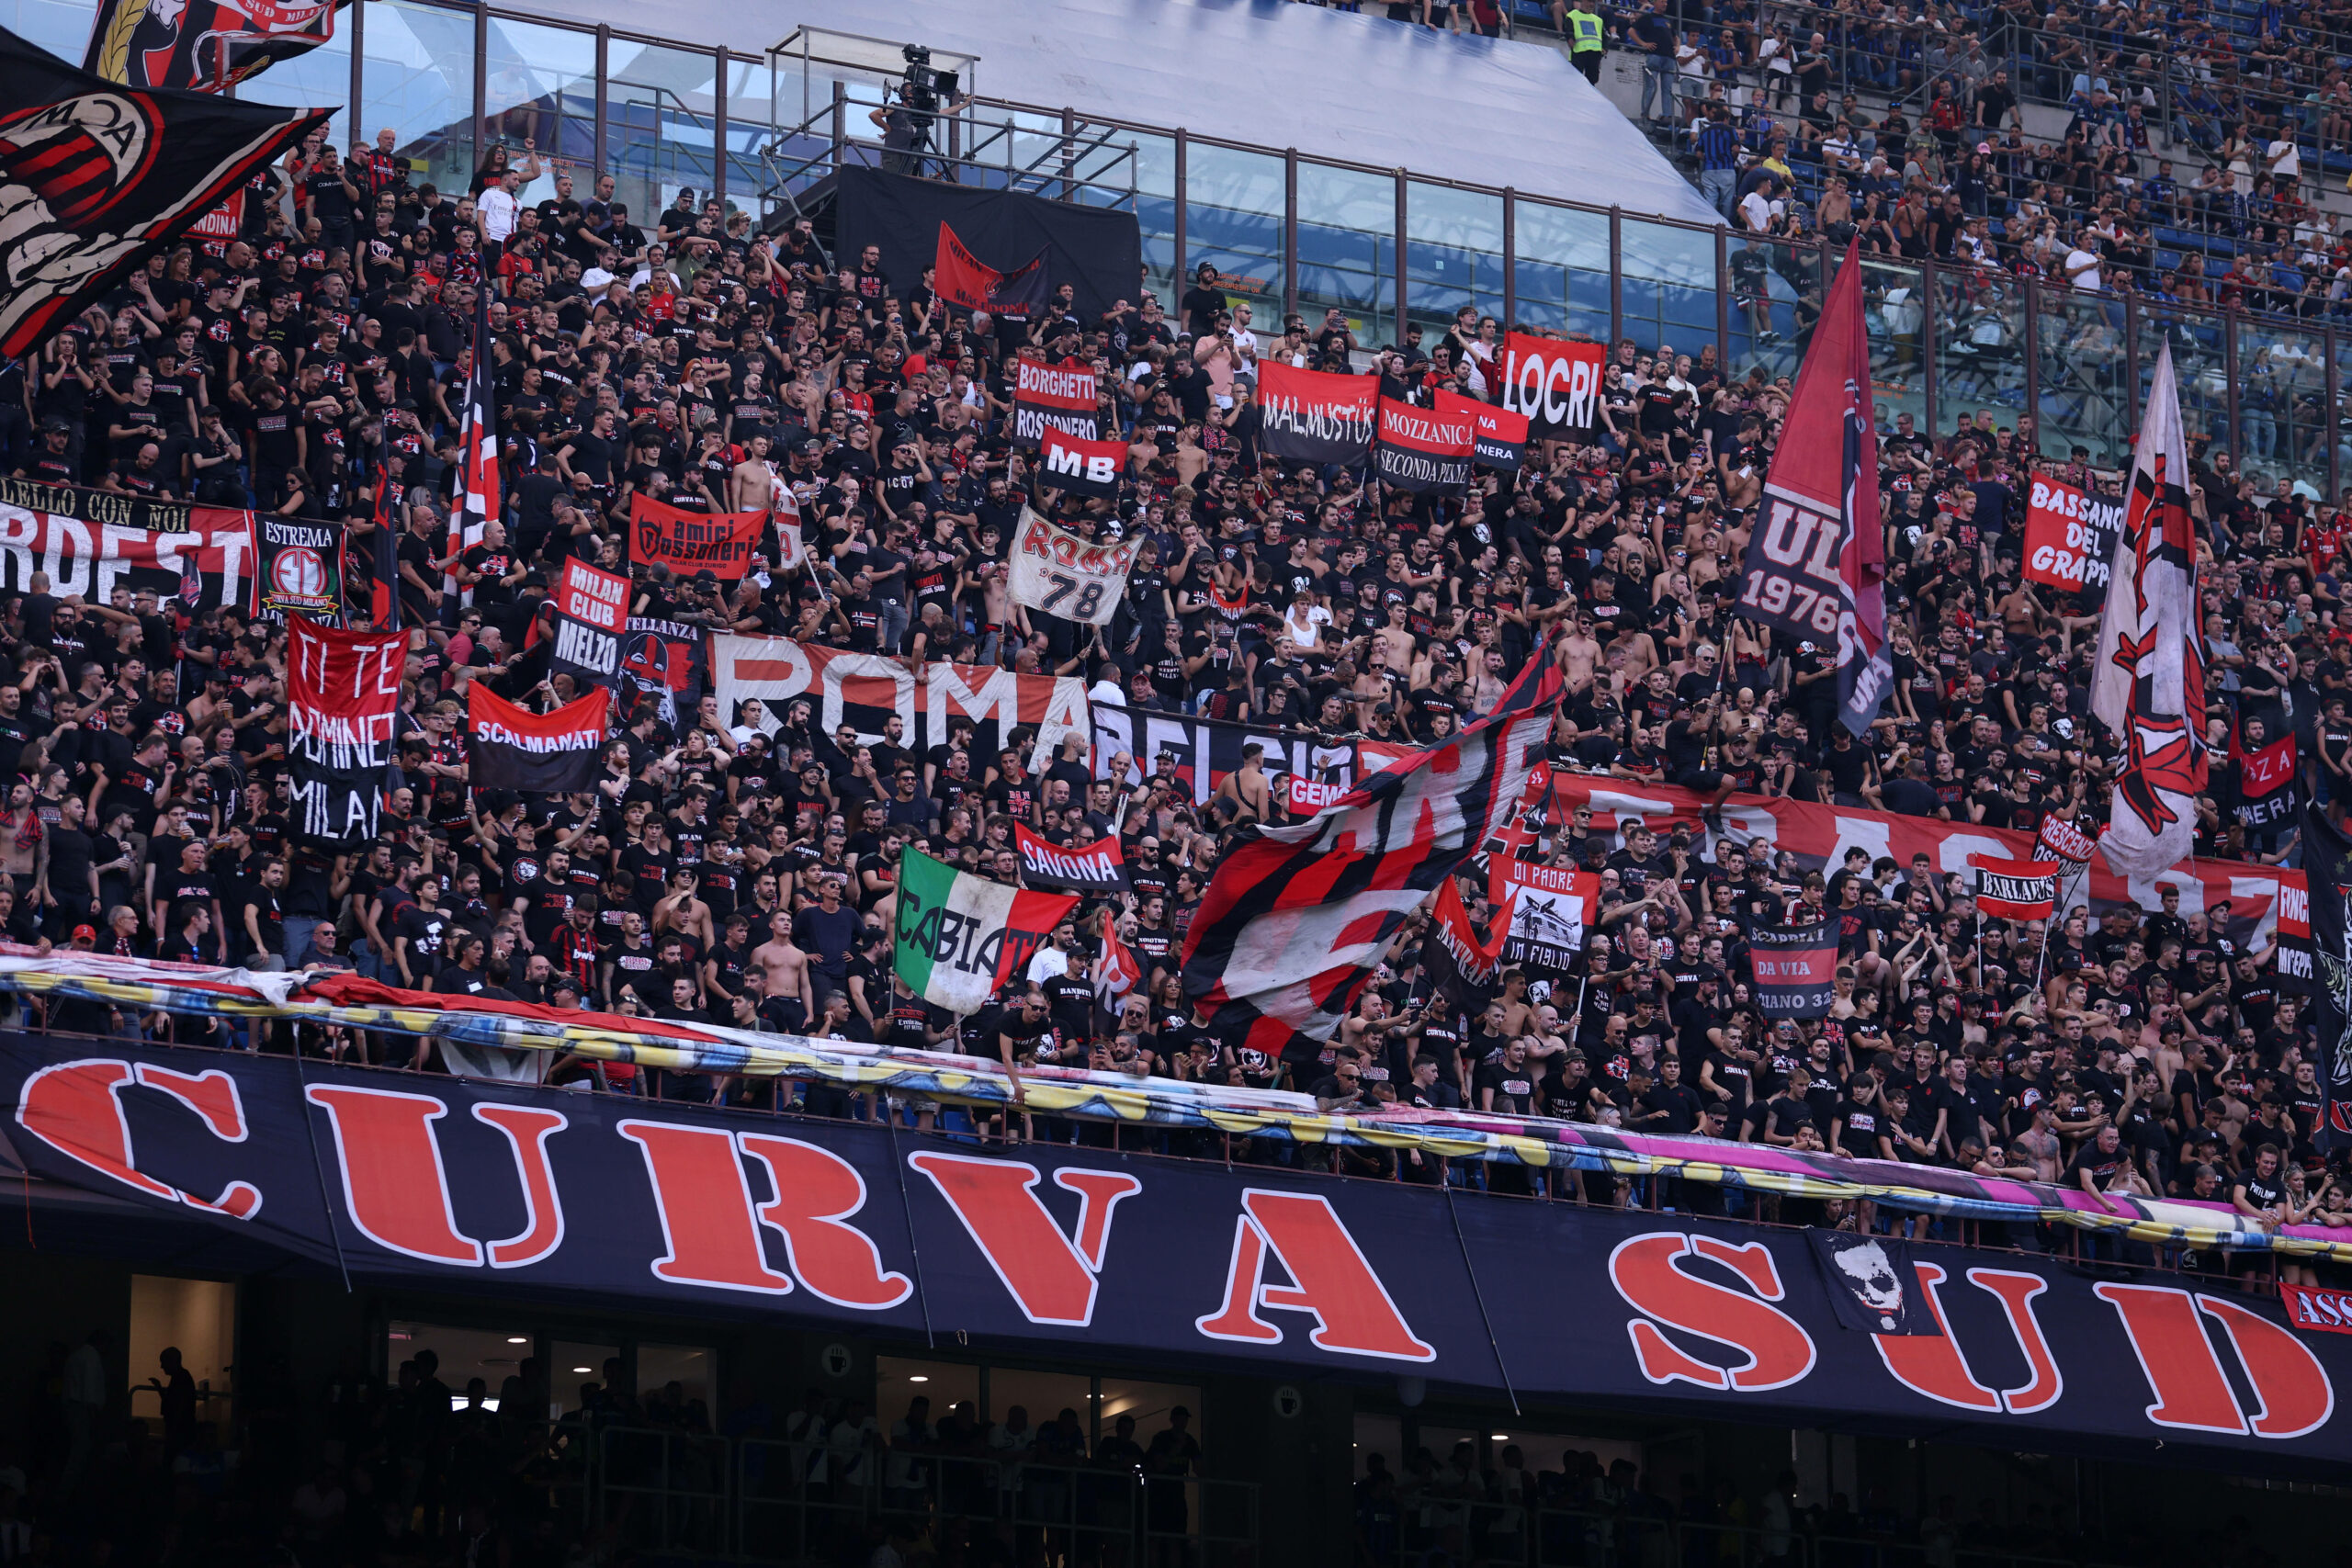 Die Südkurve im Stadion des AC Mailand